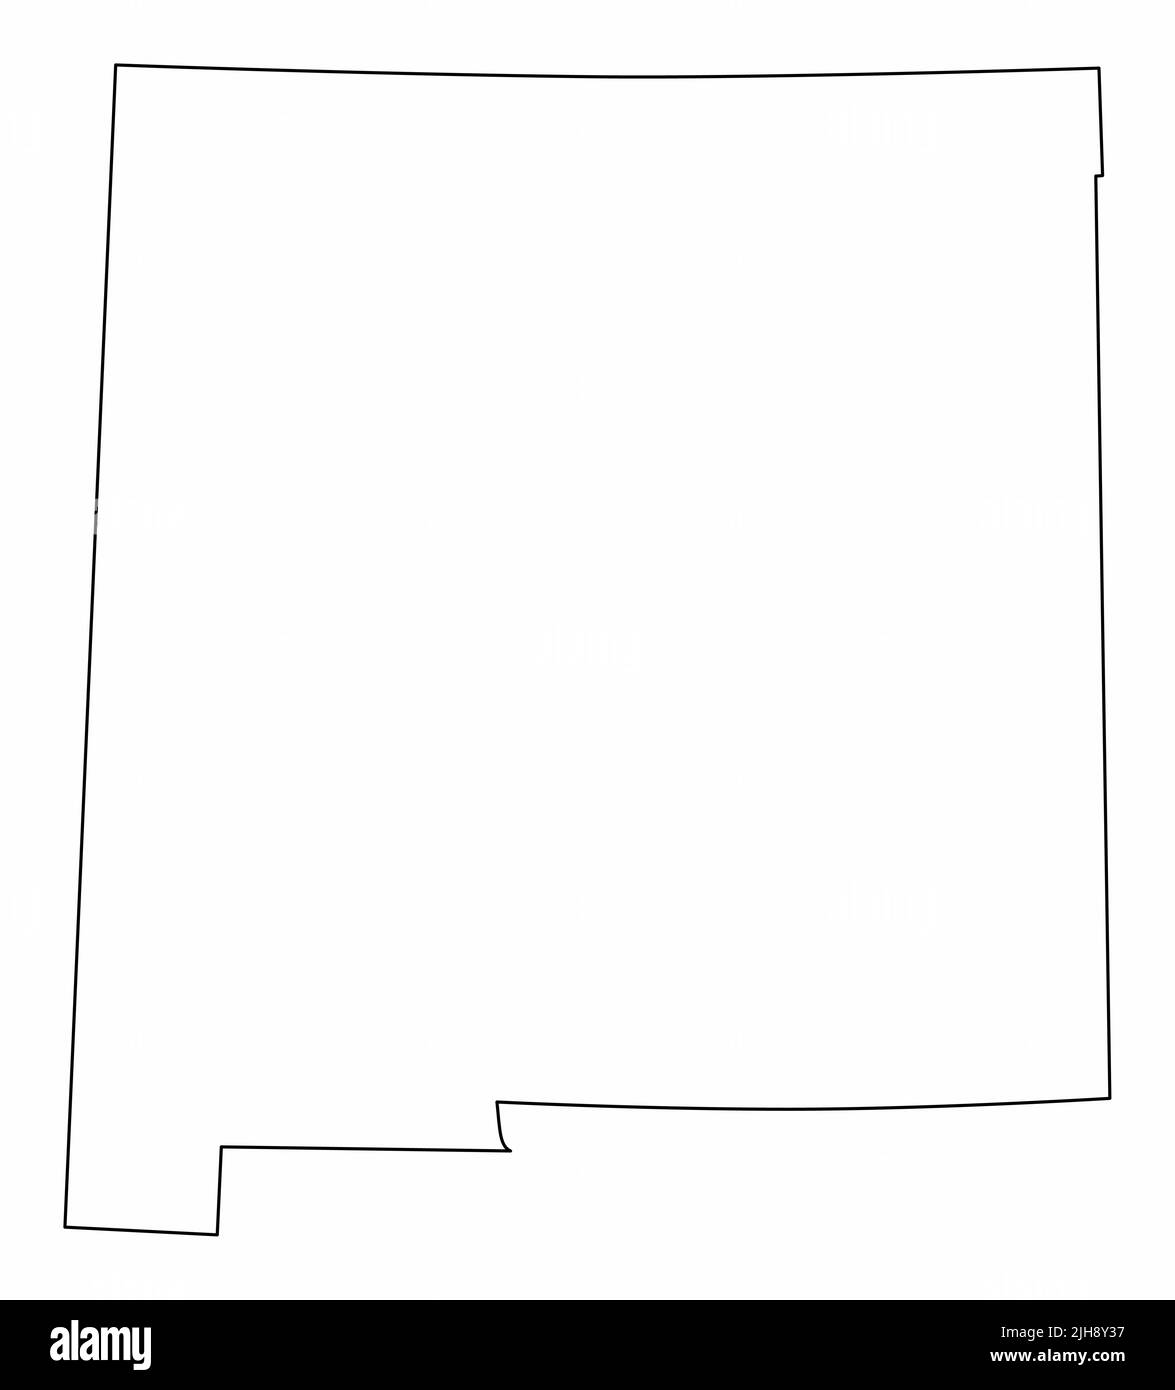 Isolierte Karte des Staates New Mexico. Schwarze Umrisse auf weißem Hintergrund. Stock Vektor